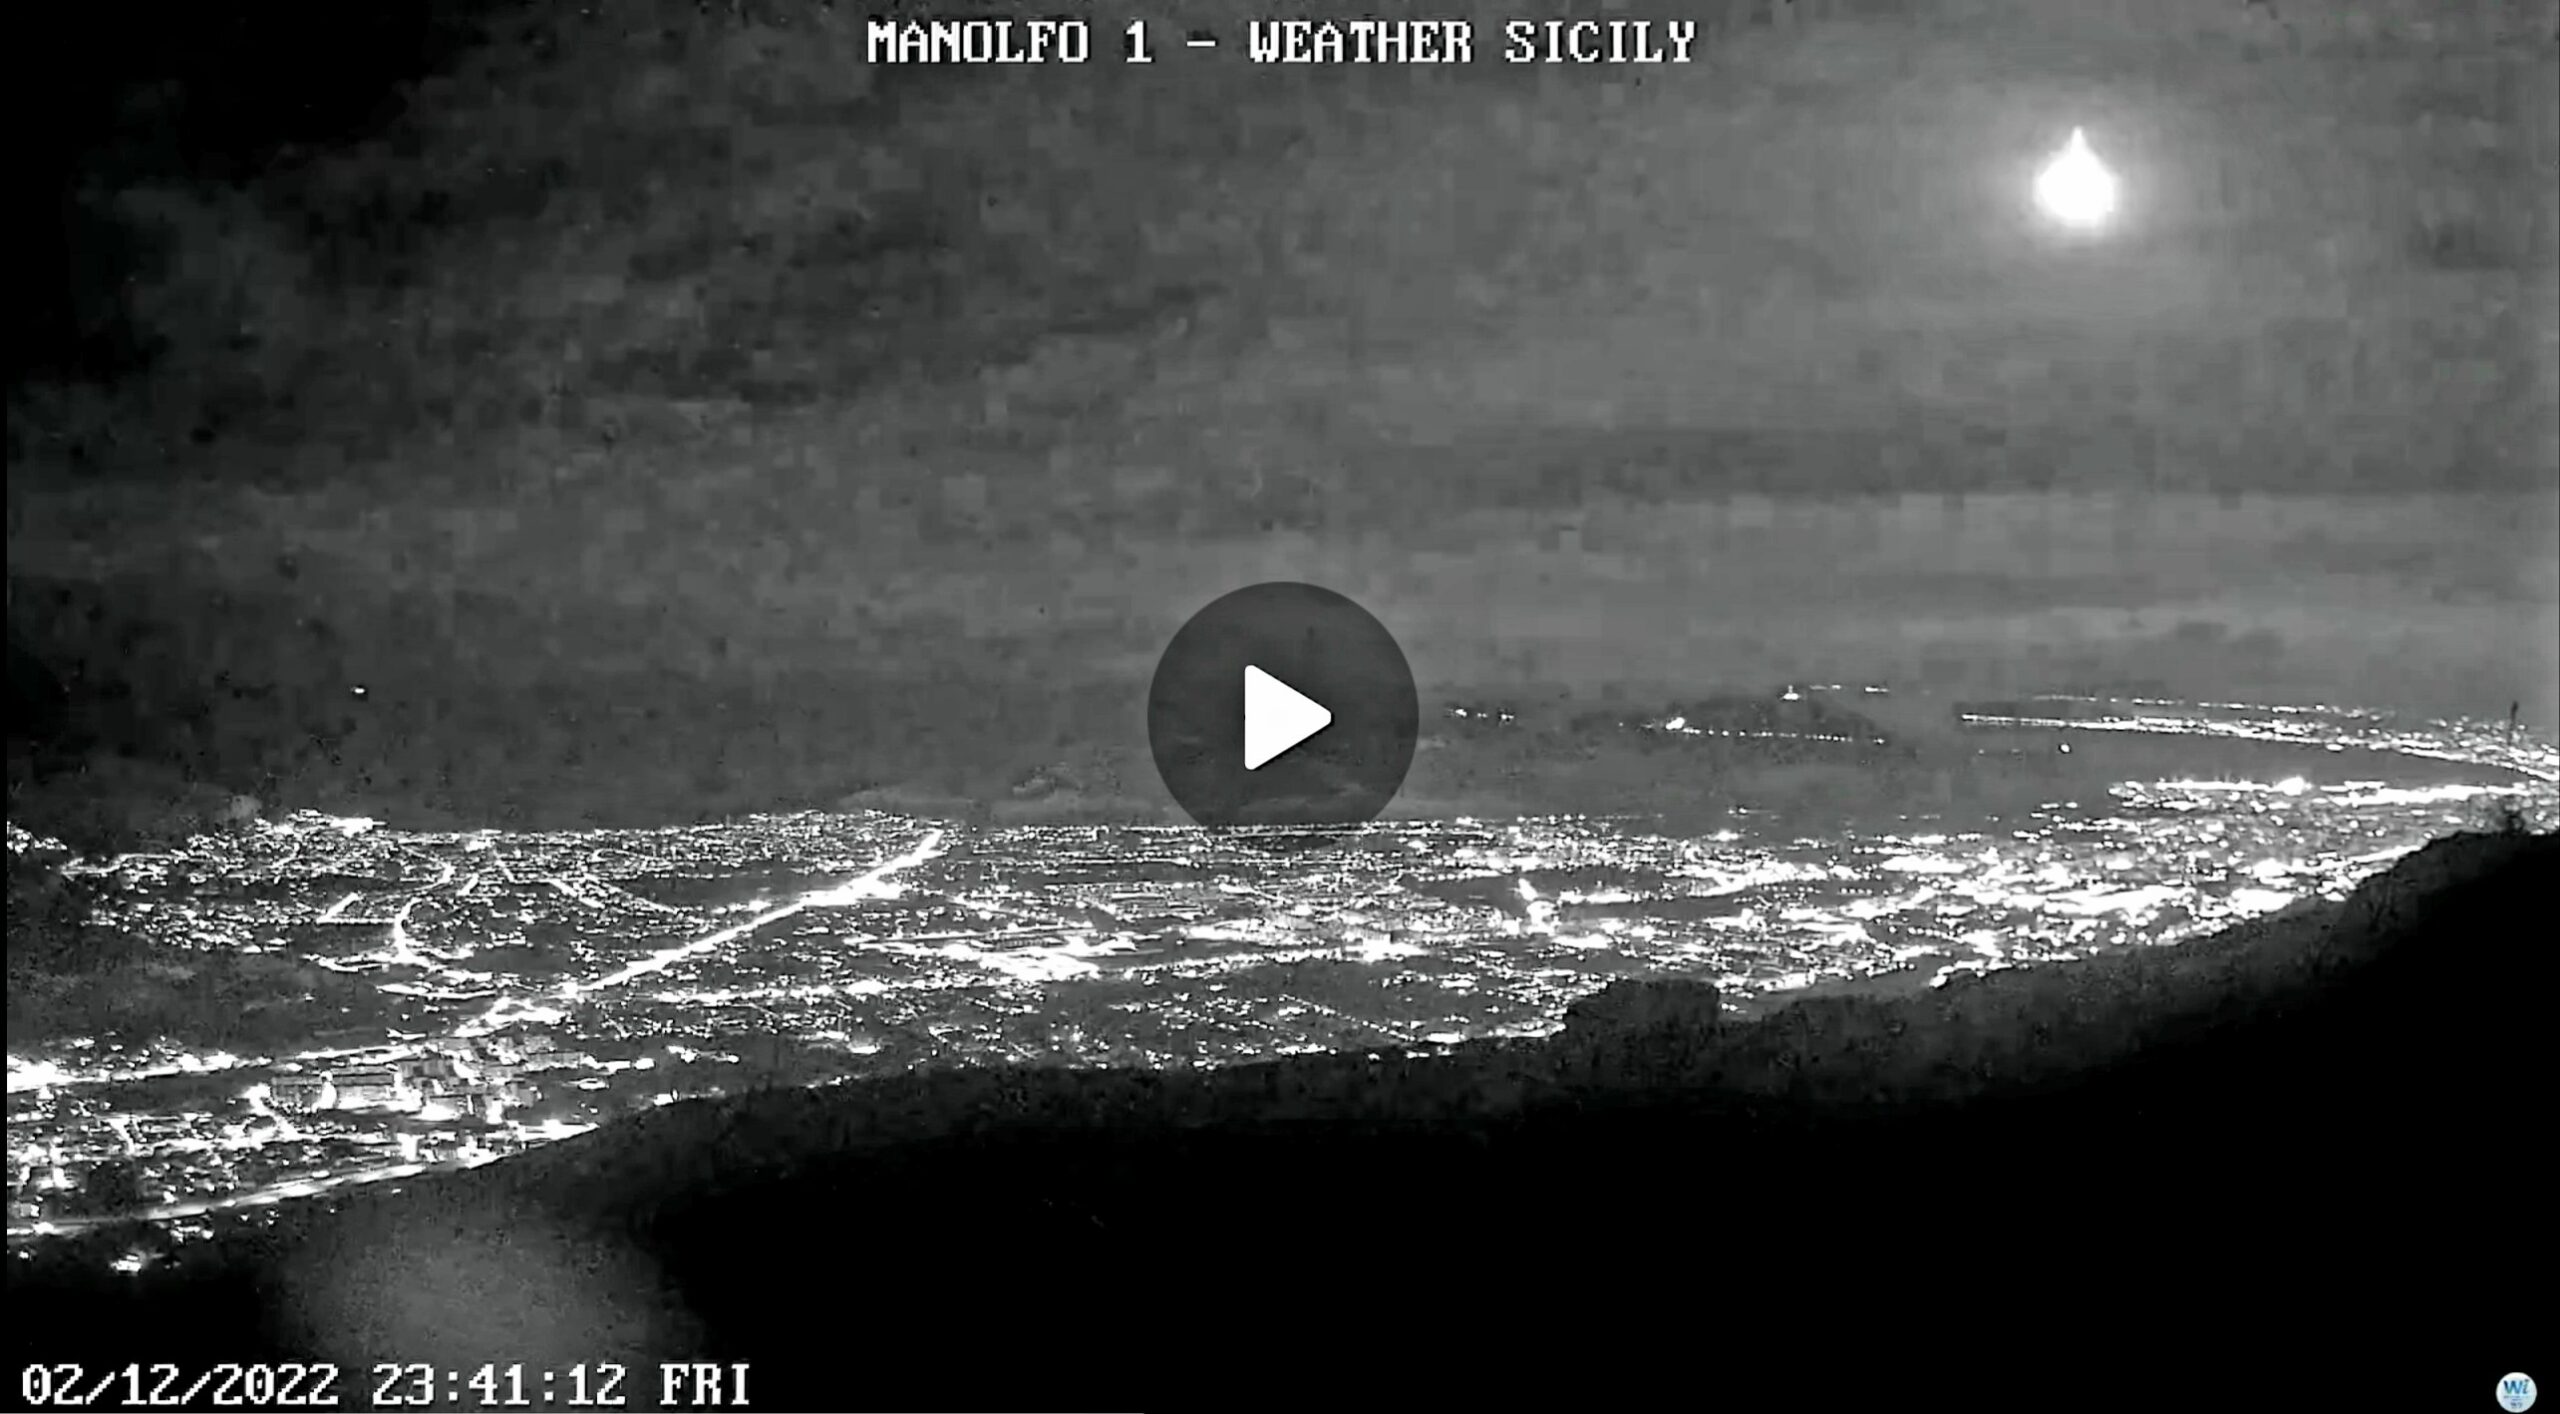 Meteo Sicilia: bolide illumina il cielo del sud Italia! -VIDEO-